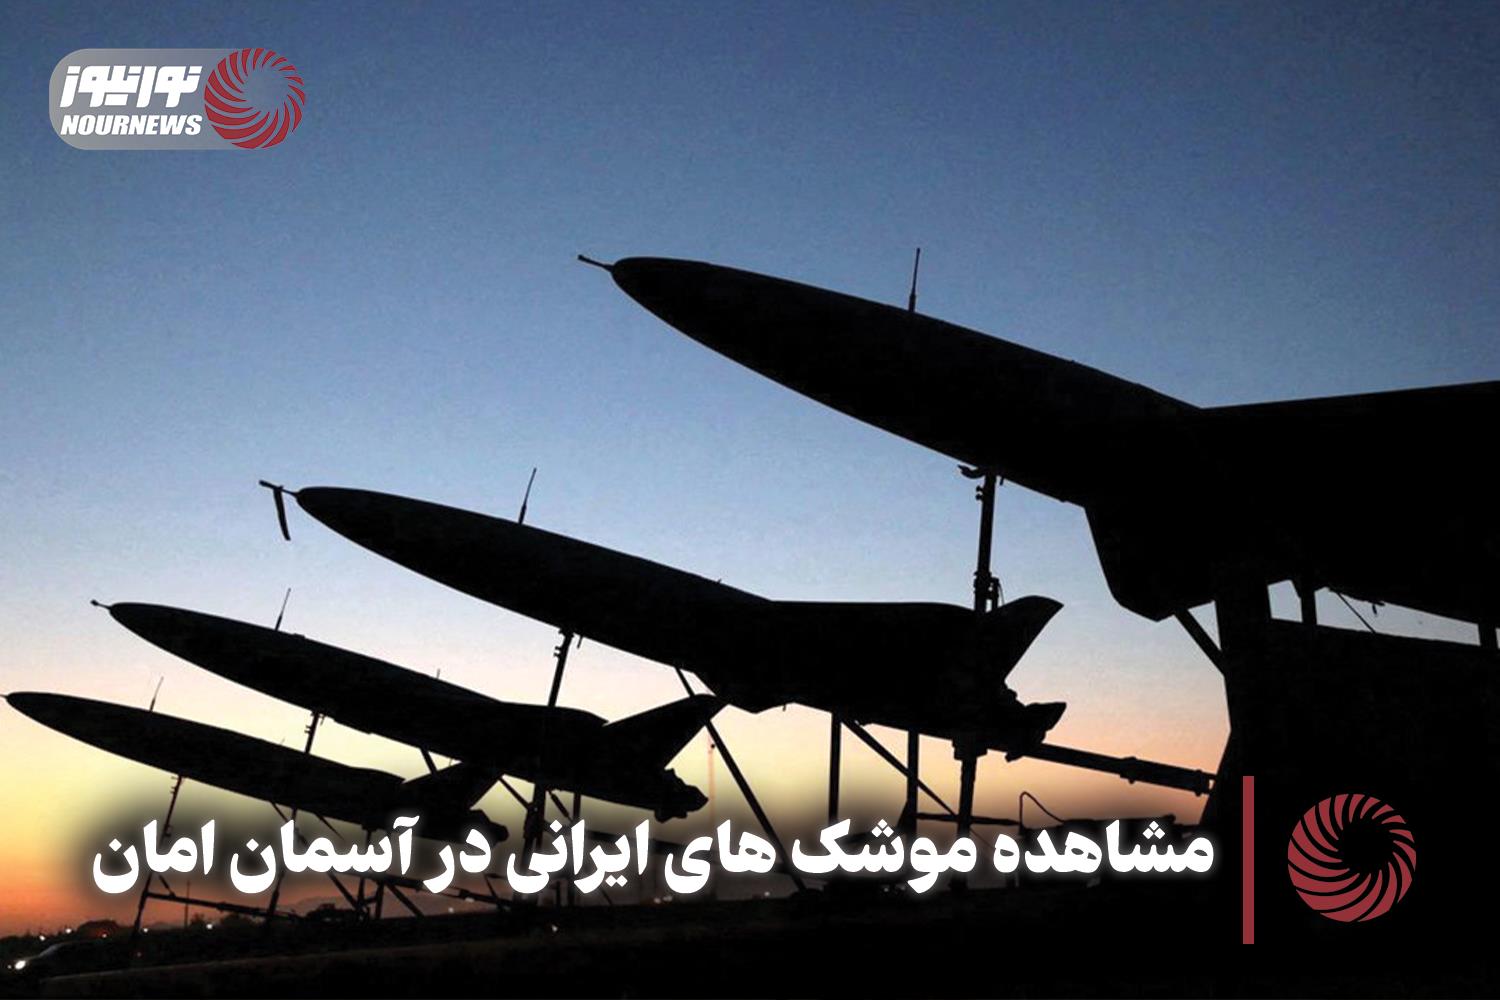 نورنما | مشاهده موشک های ایرانی در آسمان امان + فیلم